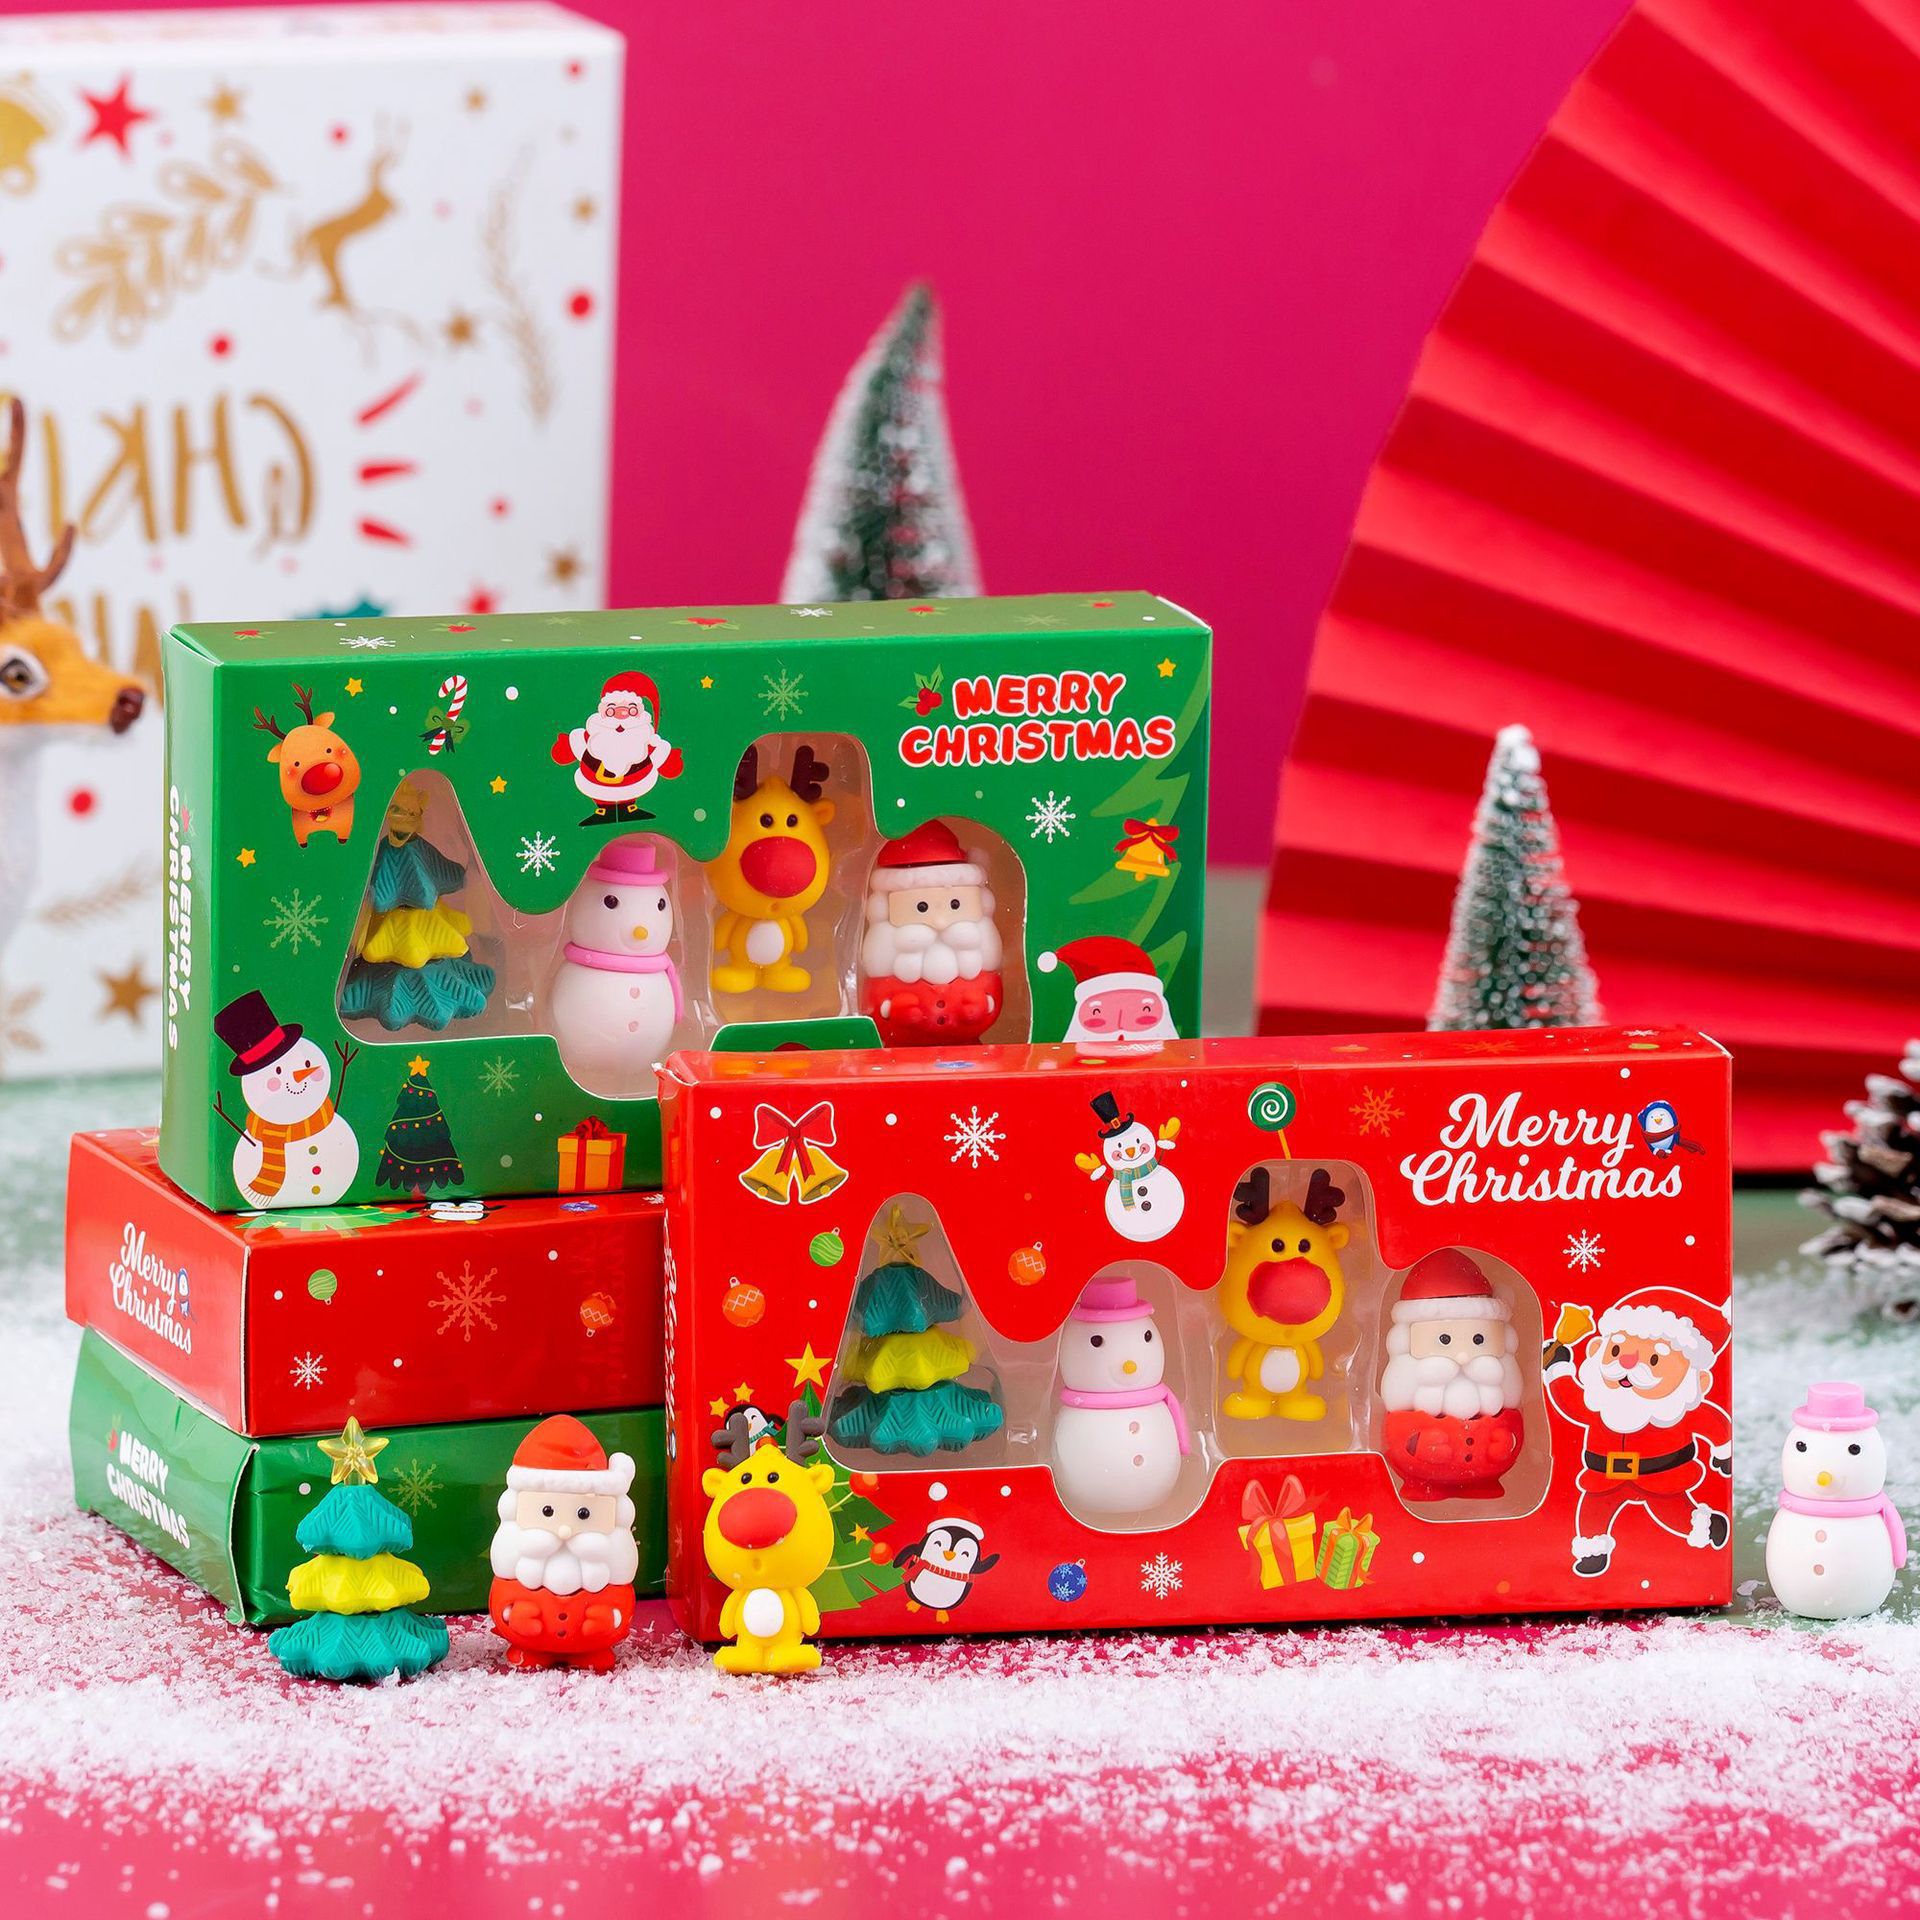 卡通橡皮擦礼盒儿童奖励圣诞礼物小学用学习用品少屑可爱文具幼儿园创意拼装套装橡皮